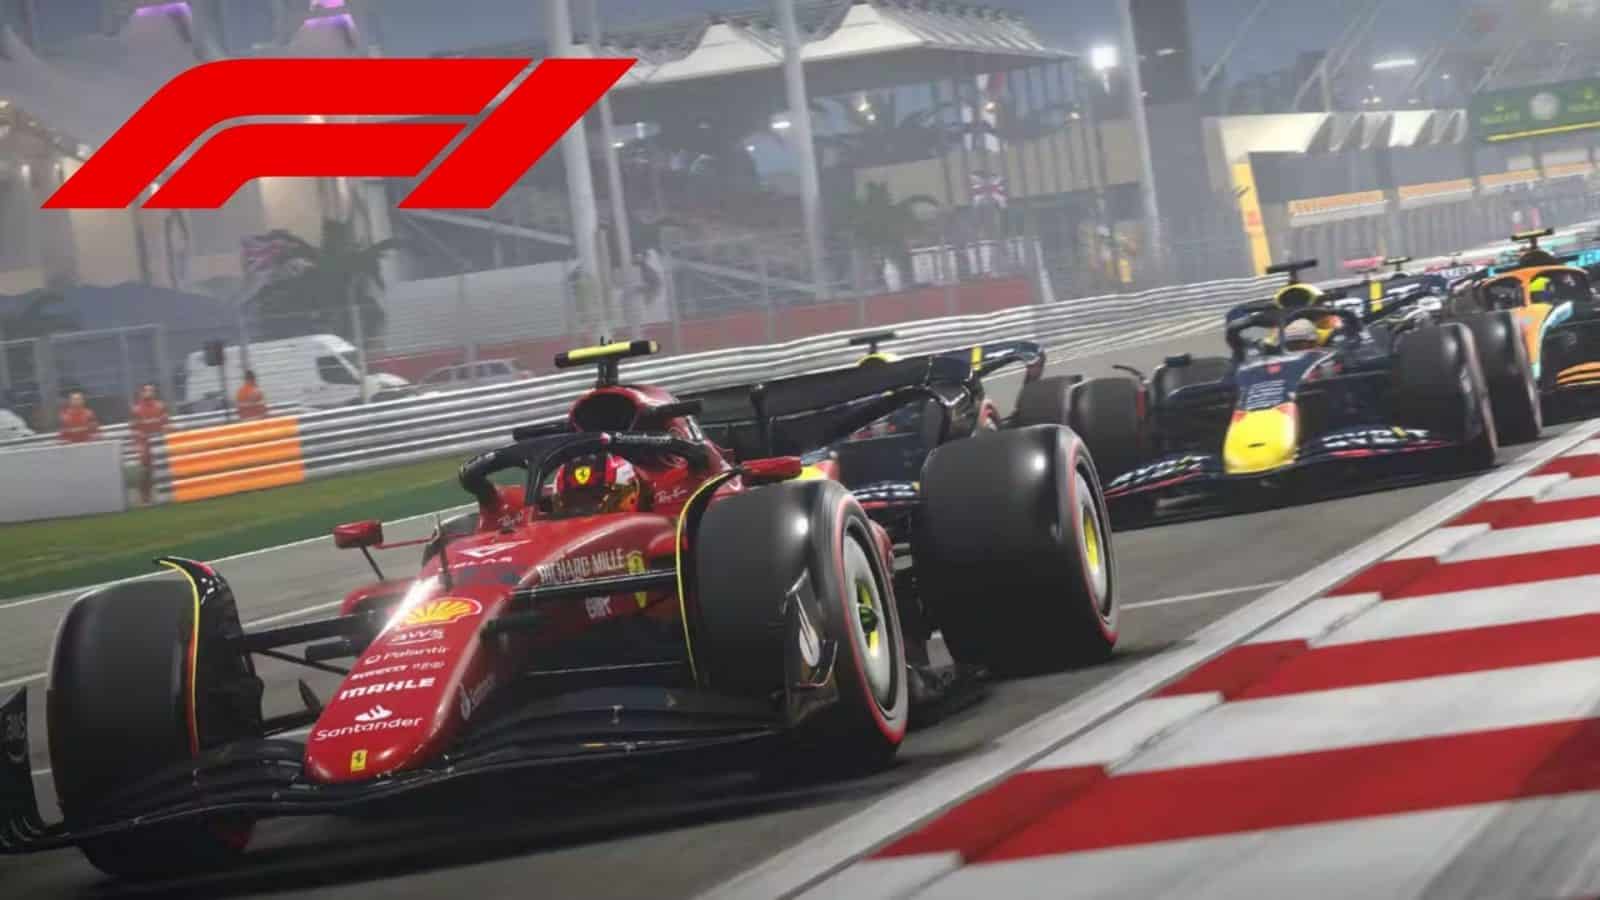 F1 2022 automobila na startnoj mreži